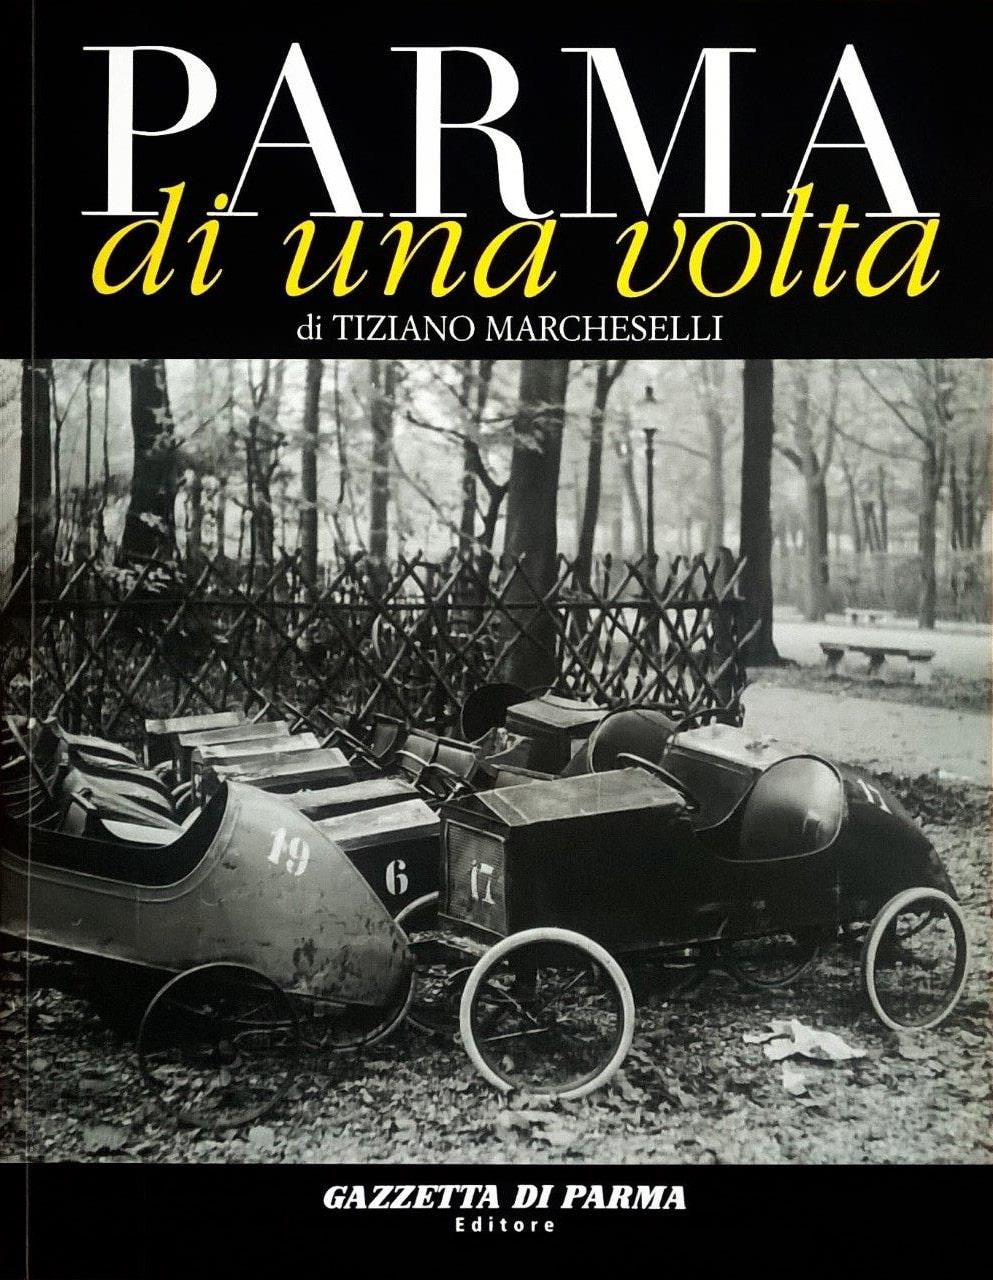 Tiziano Marcheselli, Parma di una volta - volume quattordicesimo, Parma, Gazzetta di Parma Editore (Grafiche Step Editrice), 2007